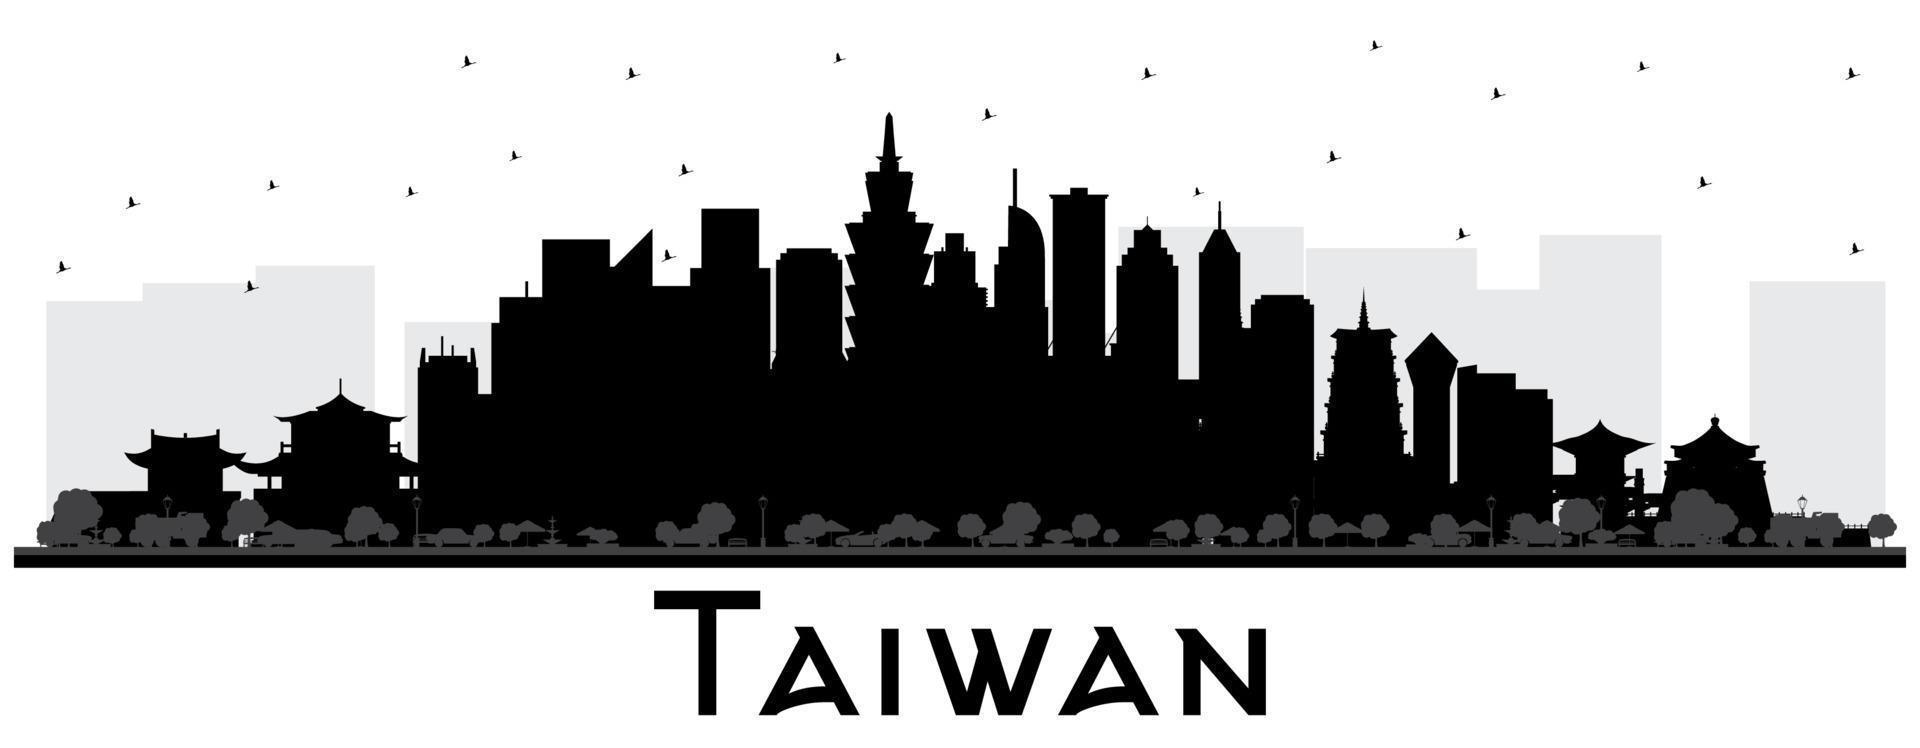 taiwan city skyline silhouette mit schwarzen gebäuden isoliert auf weiß. vektor